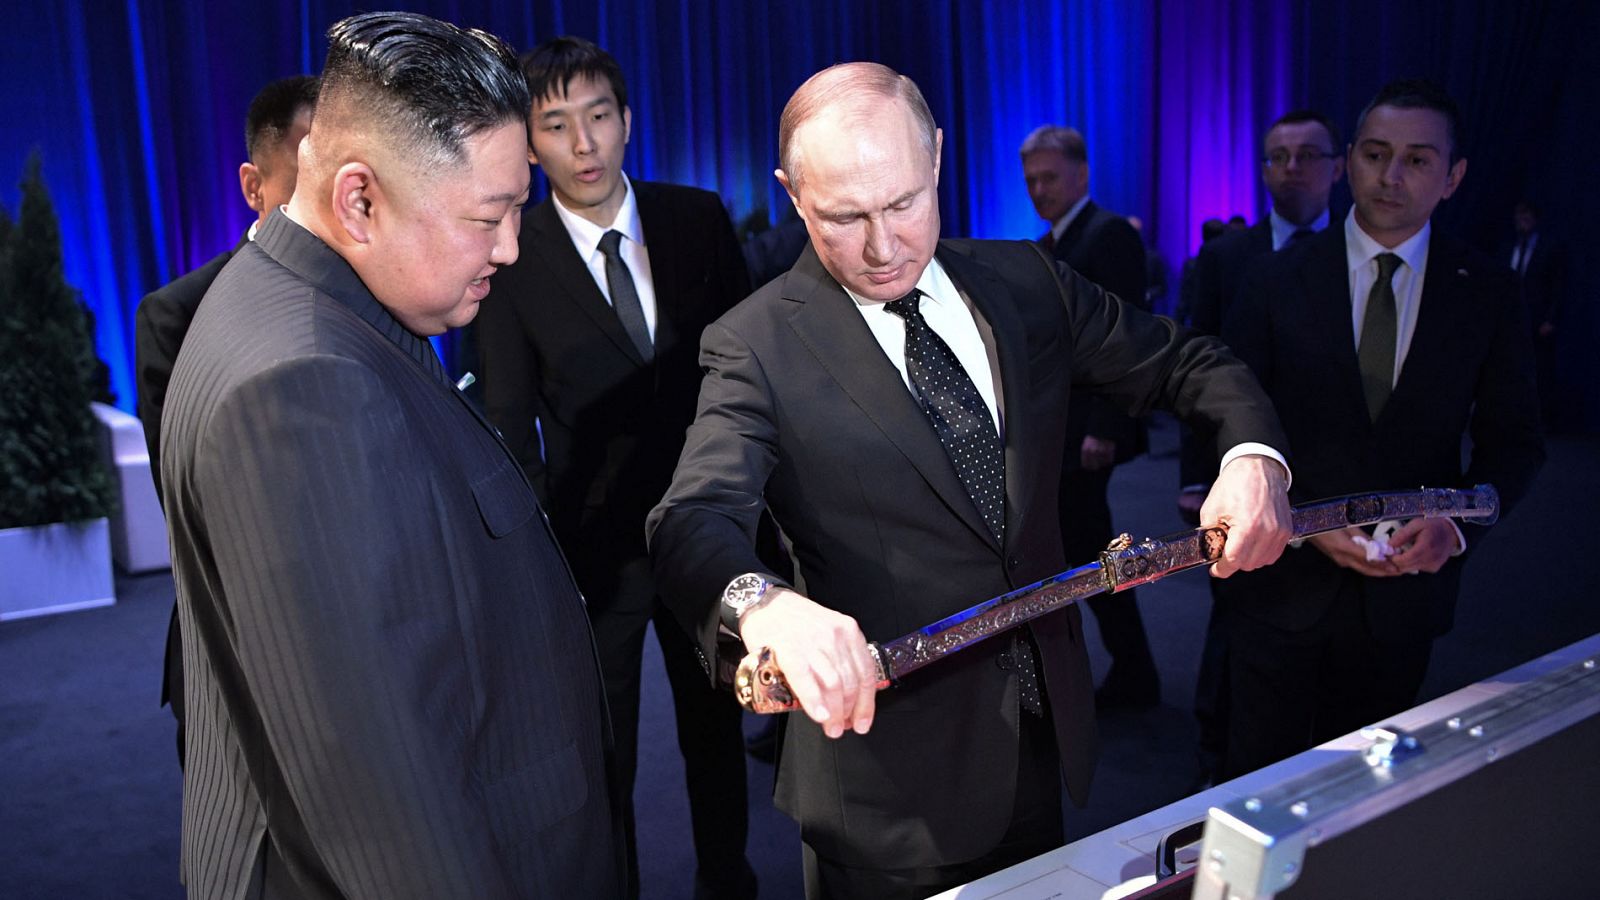 Cumbre Putin y Kim Jong-un: Putin recibe a Kim Jong-un en Vladivostok - RTVE.es